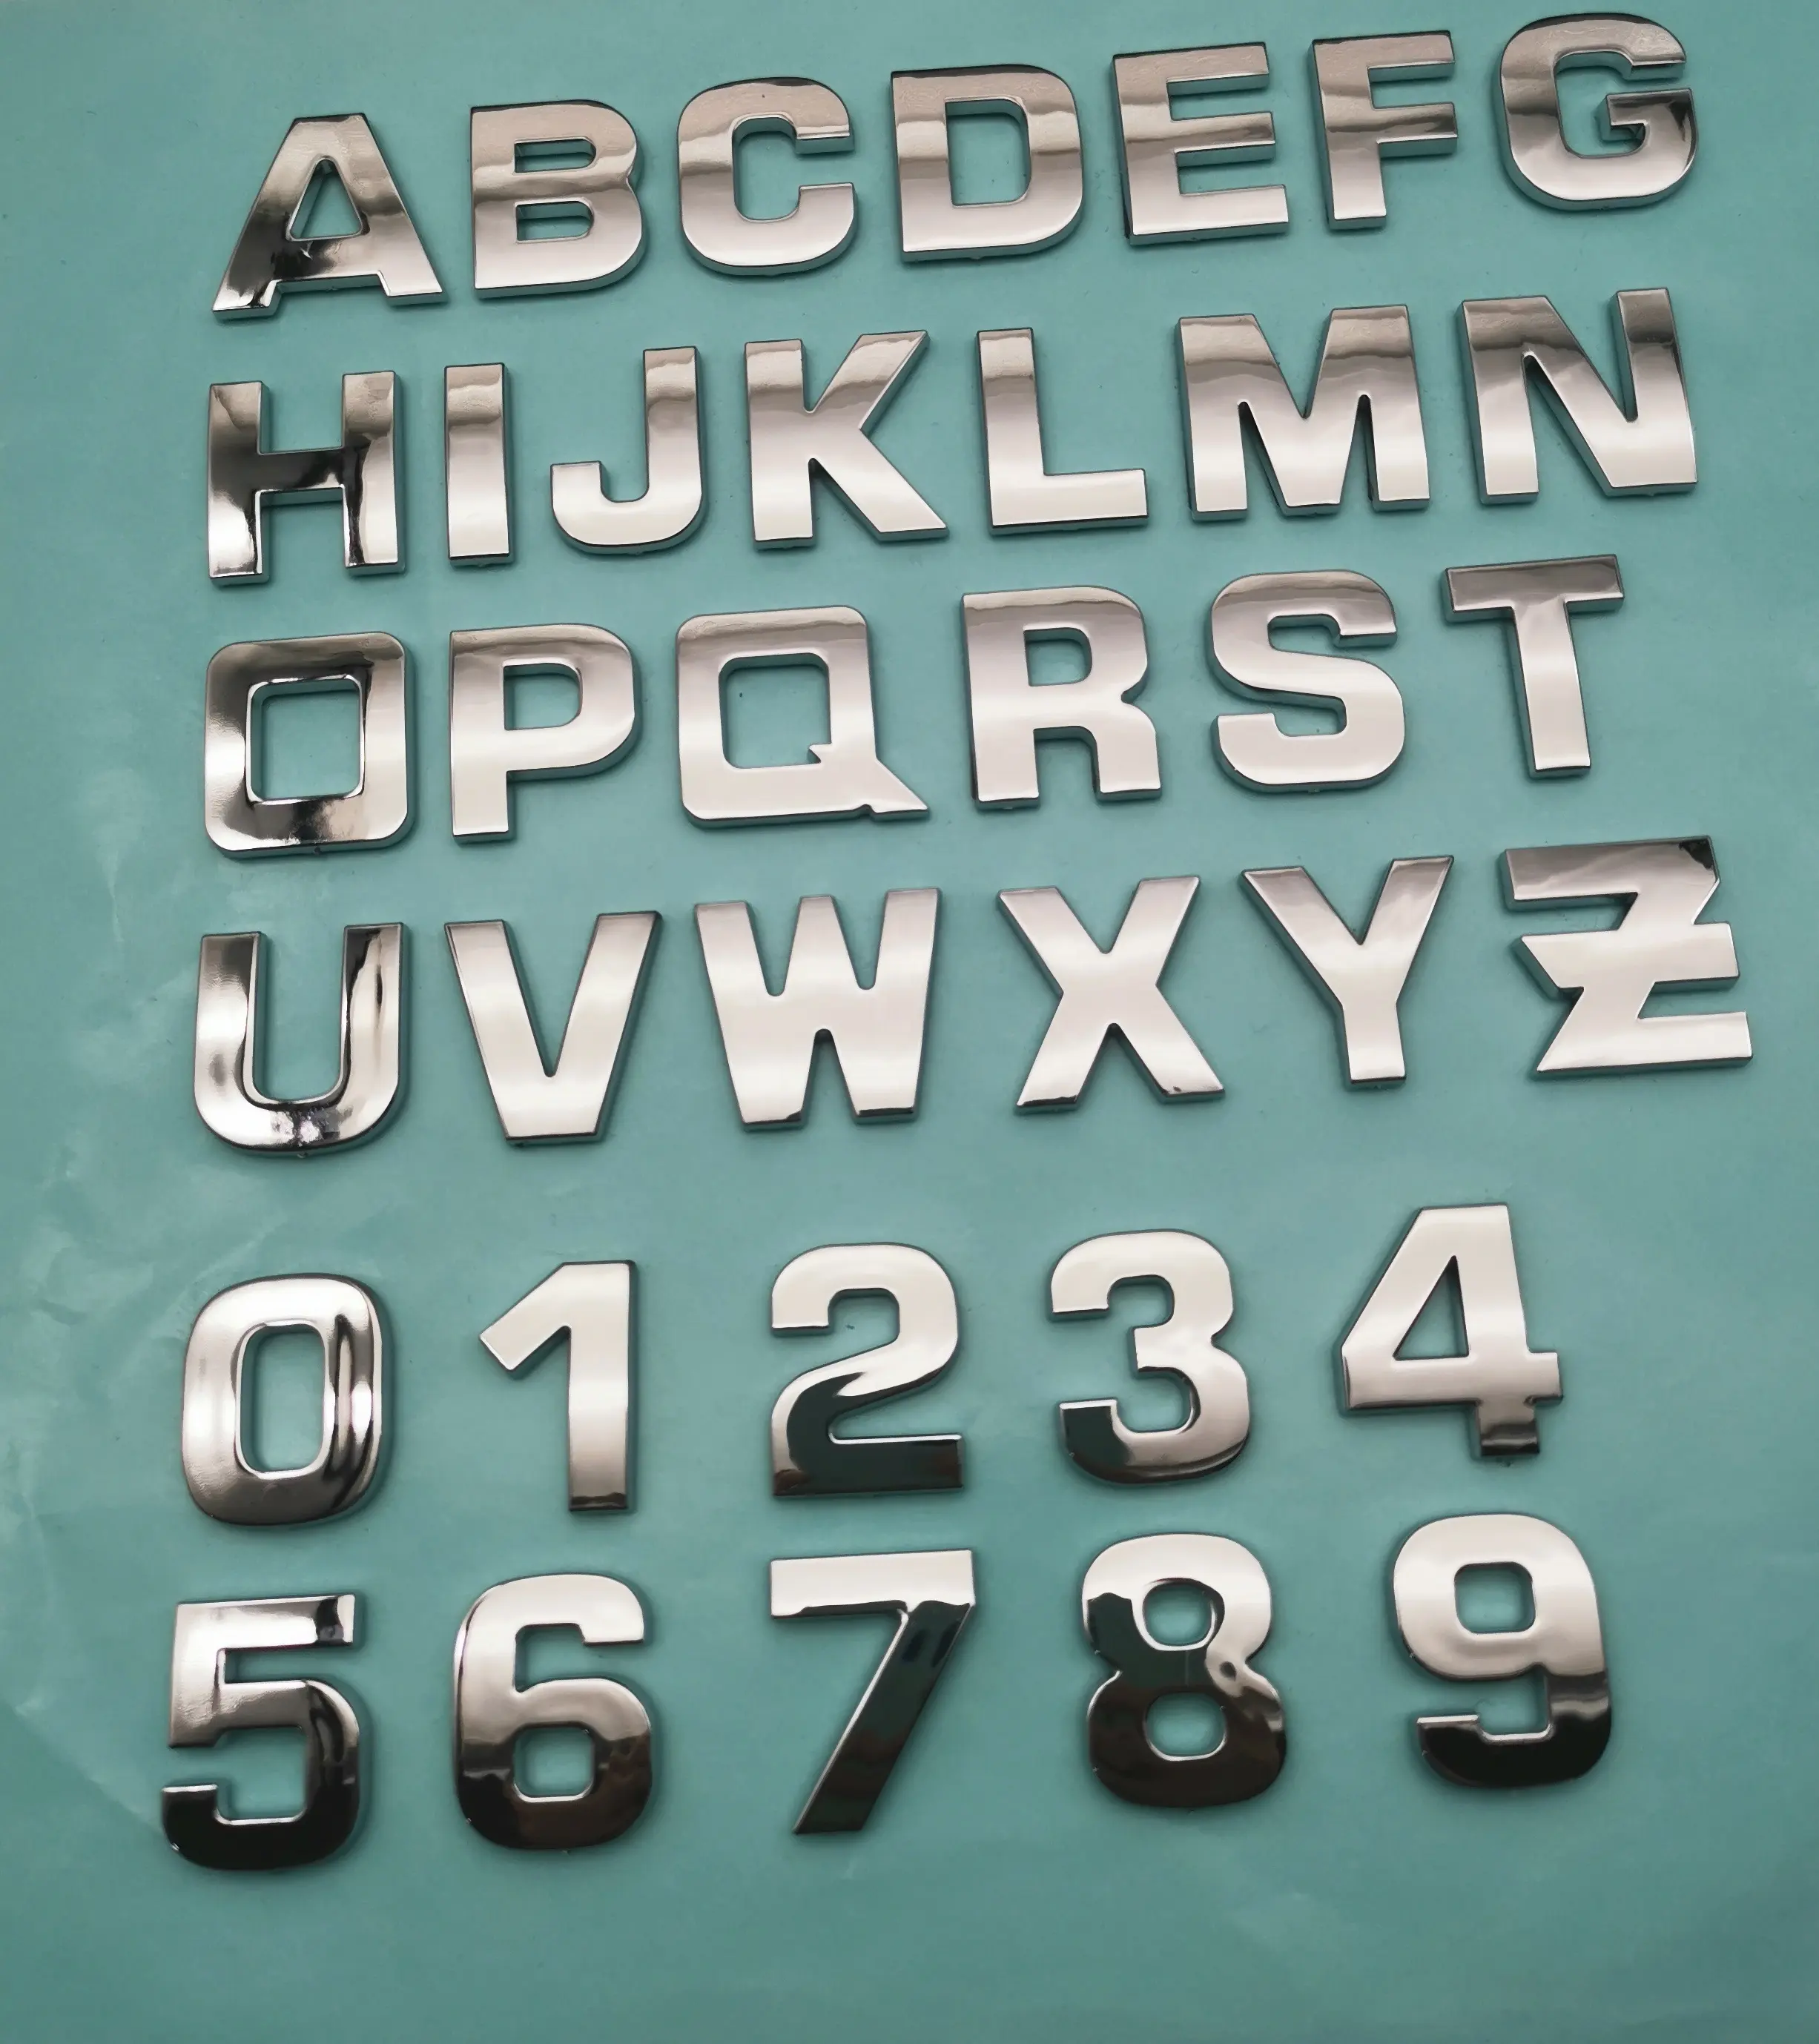 شارة فضية ثلاثية الأبعاد ABS للحروف والرقم مصنوعة من الكروم ملصقات لشعار السيارة مصنوعة من الكروم ملصقات للهيكل